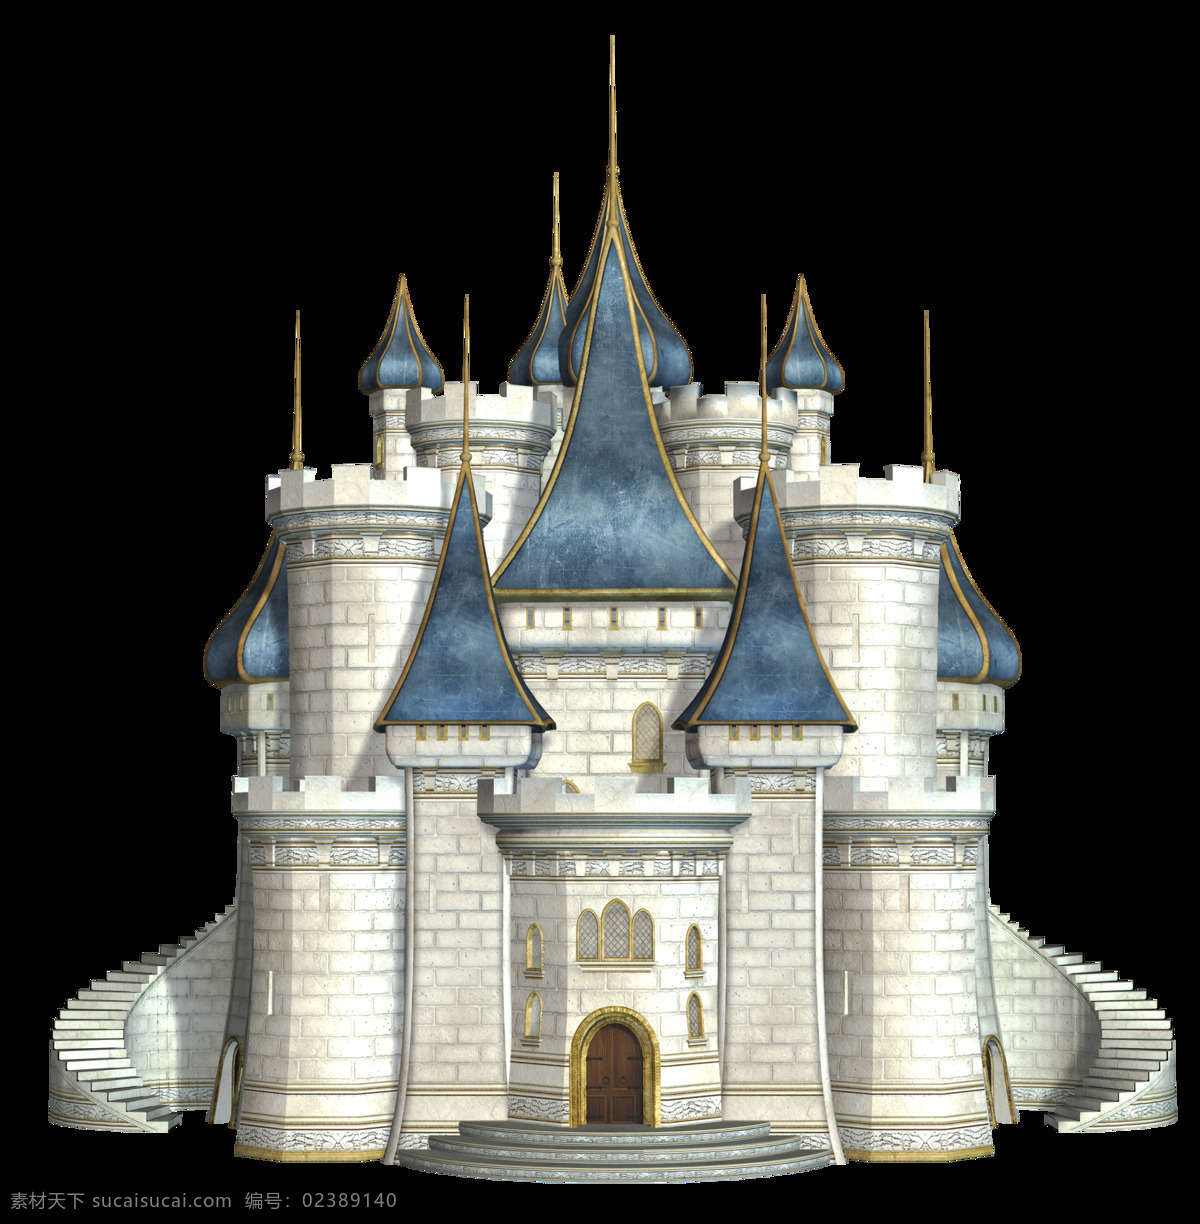 卡通 童话 城堡 图案 png图案 彩绘素材 卡通城堡 童话城堡 童话世界 童话元素 装饰图片